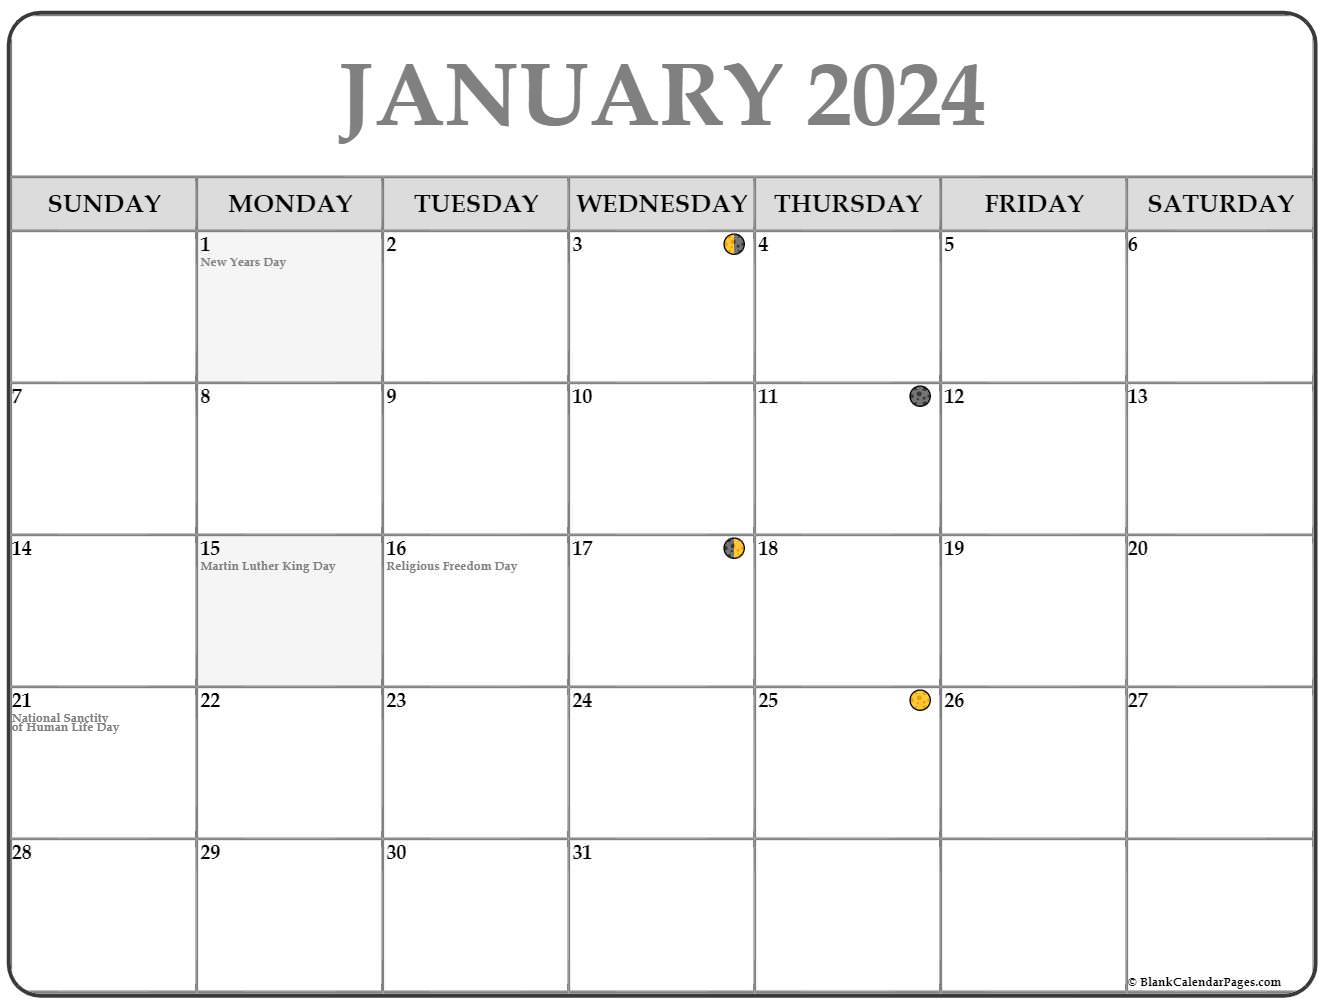 January 2022 Lunar Calendar Moon Phase Calendar